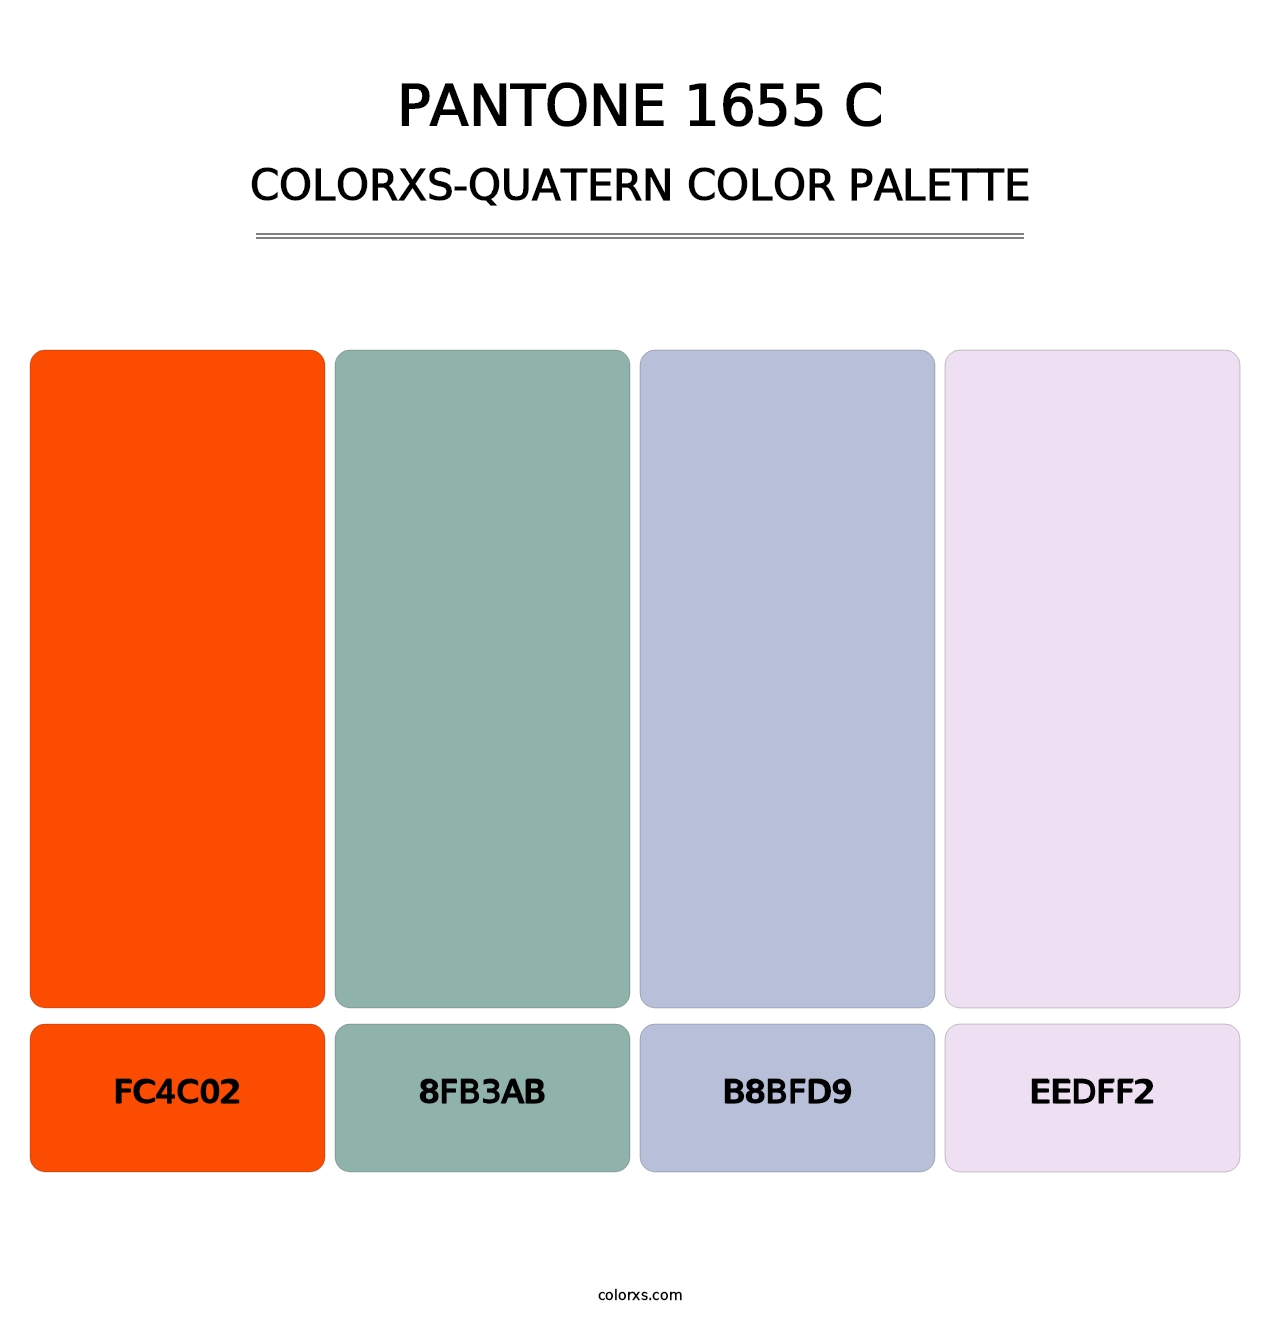 PANTONE 1655 C - Colorxs Quatern Palette